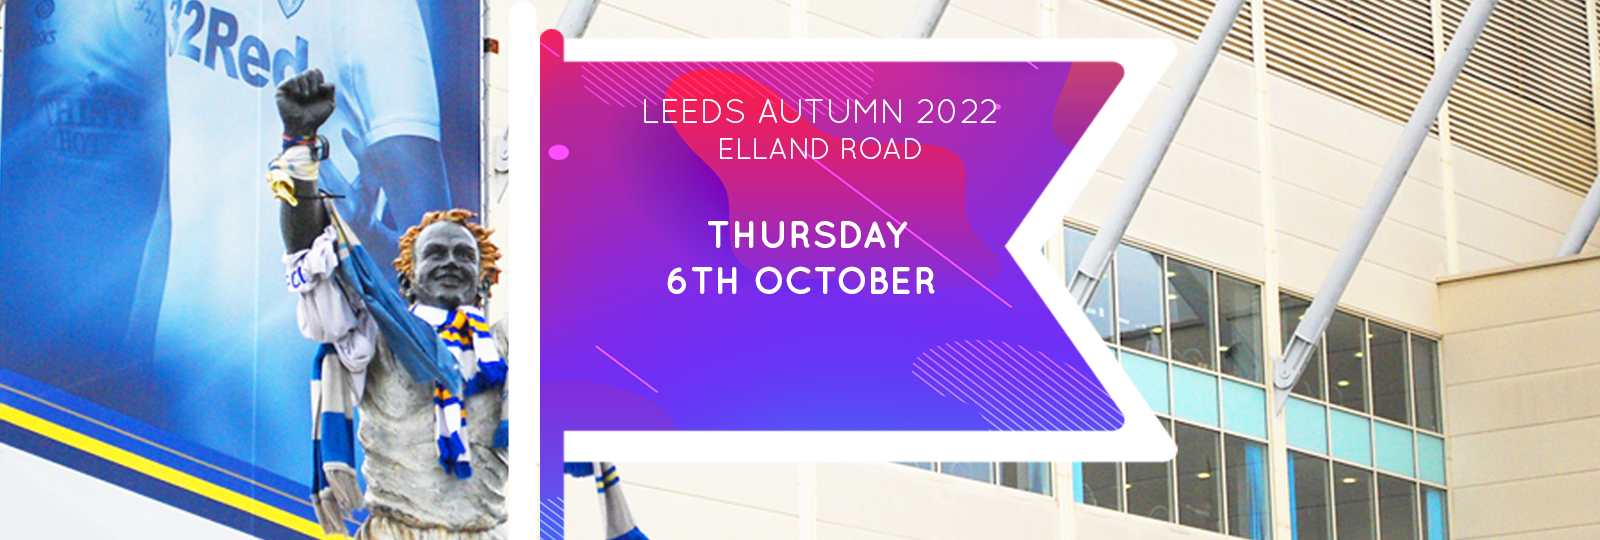 Leeds Autumn 2022 Fair